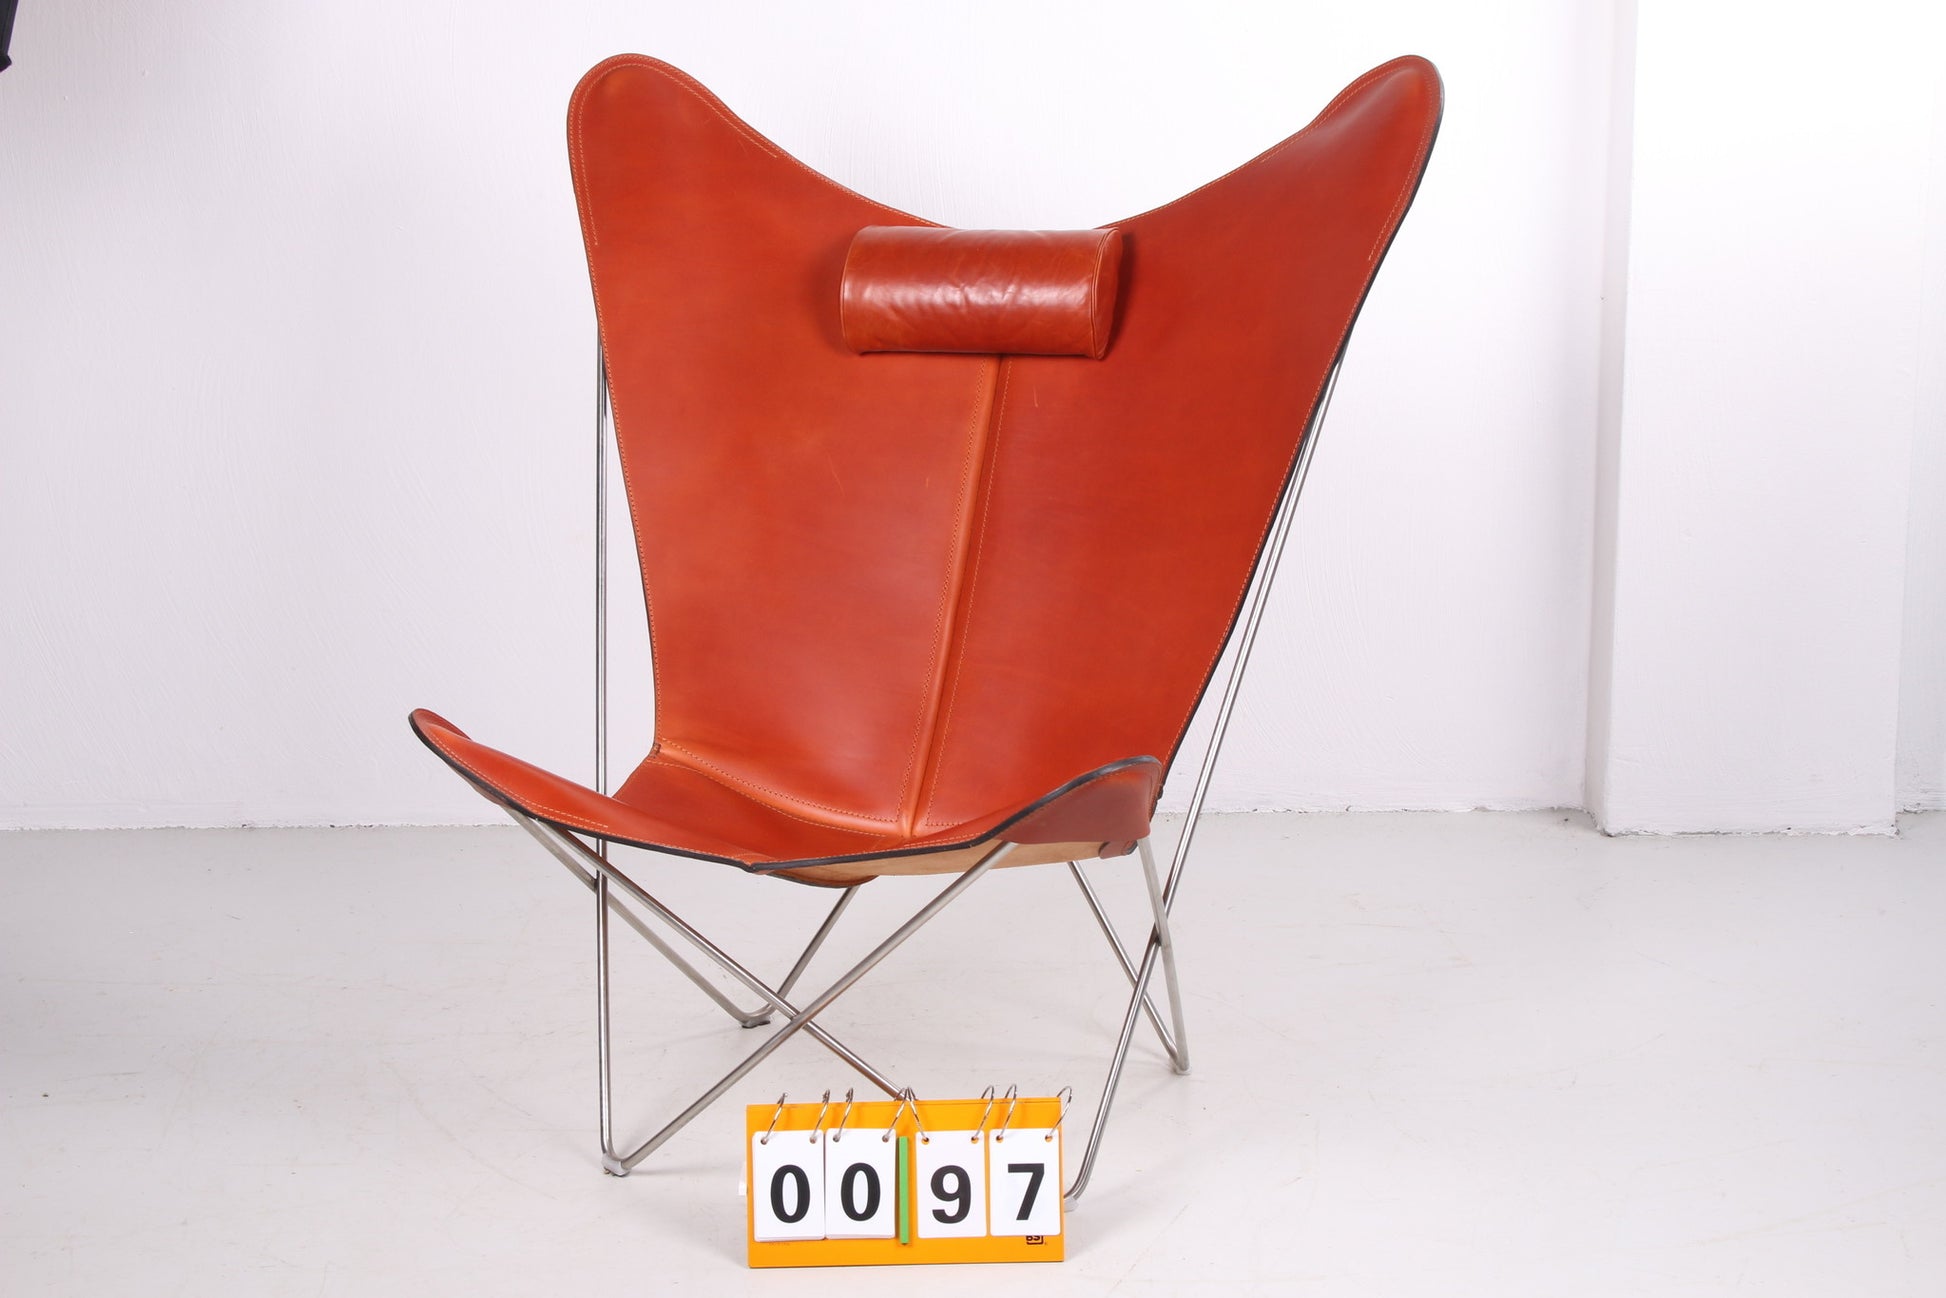 Vlinderstoel Ks chair van Ox Denmarq voorkant